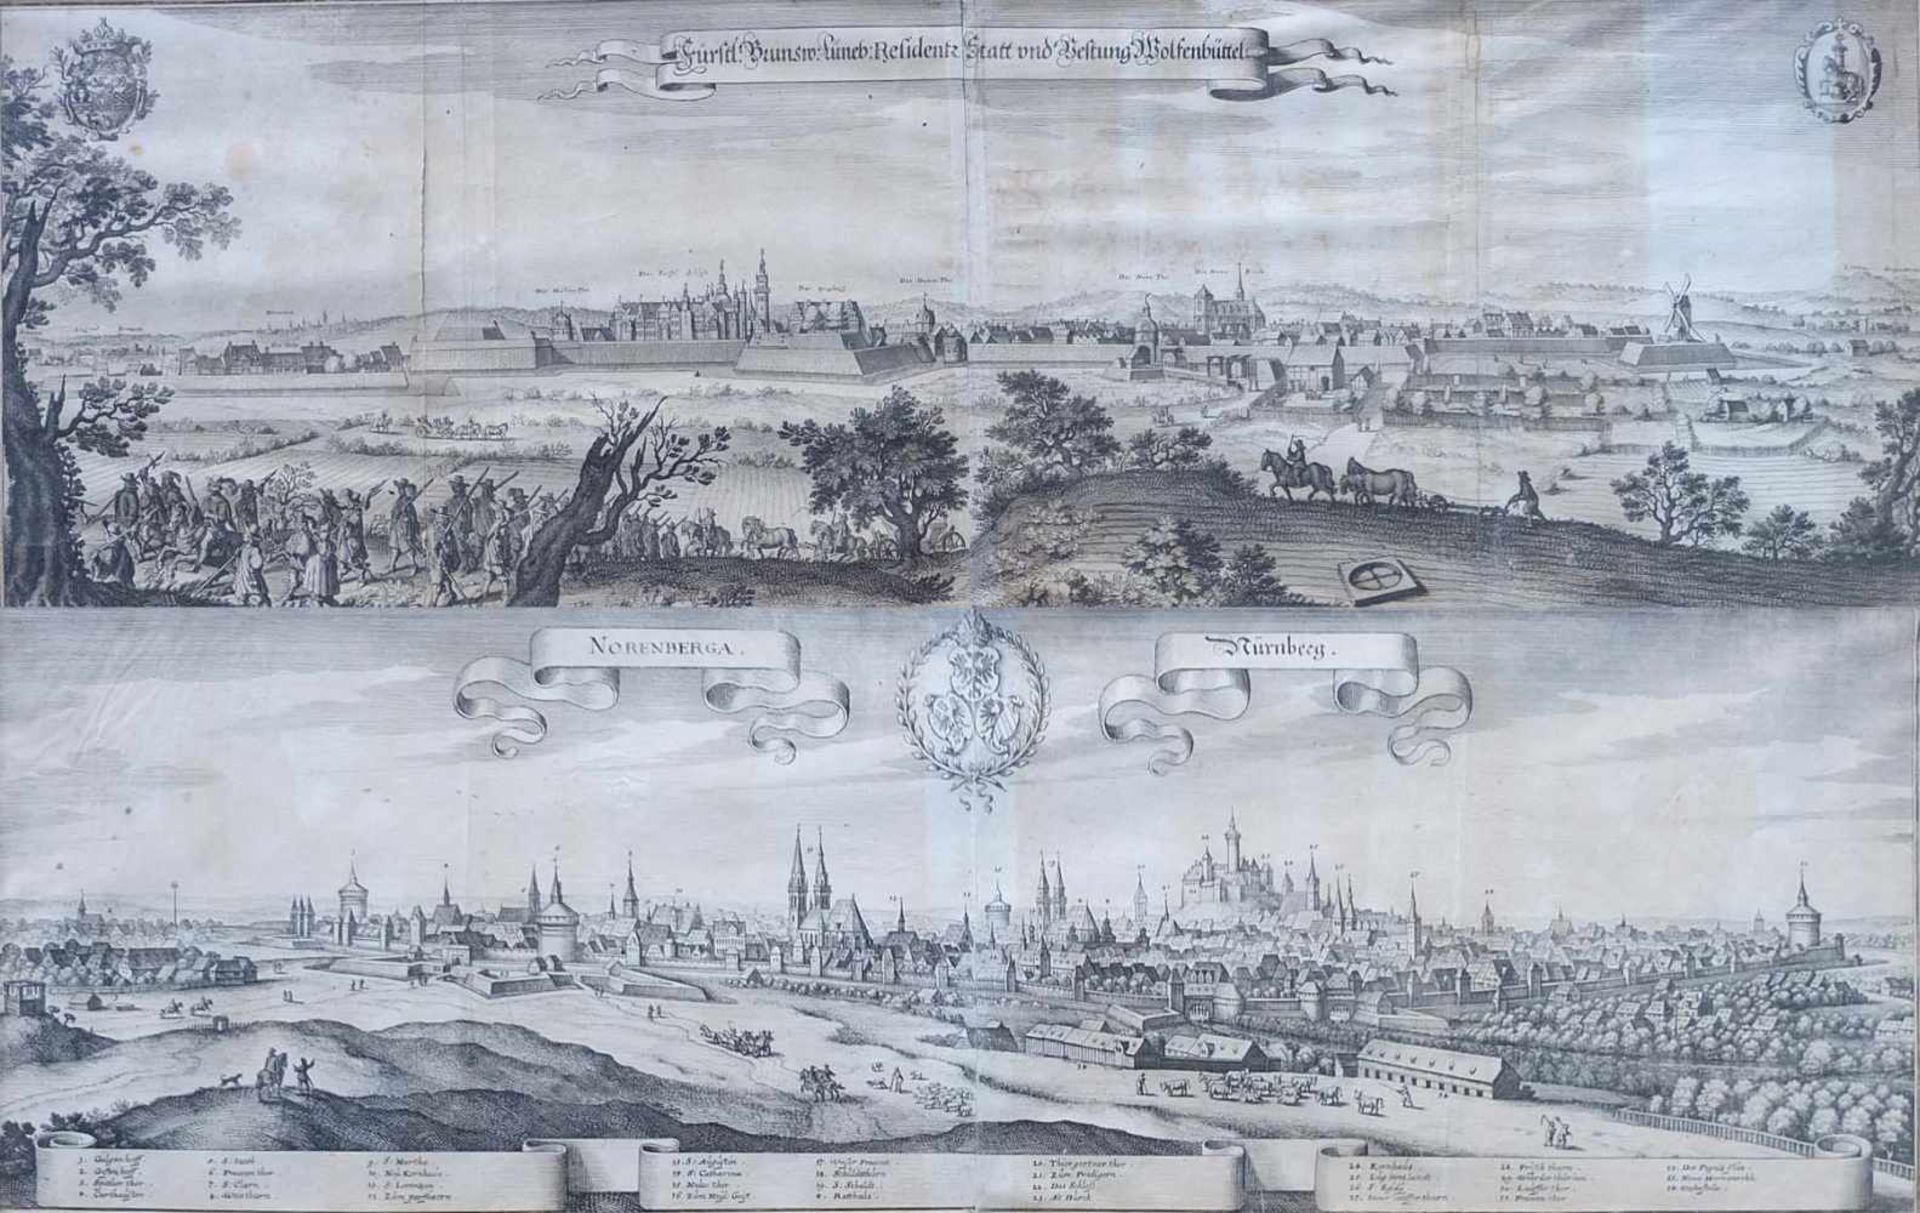 MERIAN, Matthäus (*1593 Basel †1650 Langenschwalbach) Kupferstich, "Fürstl. Brunsw. Luneb. Residentz